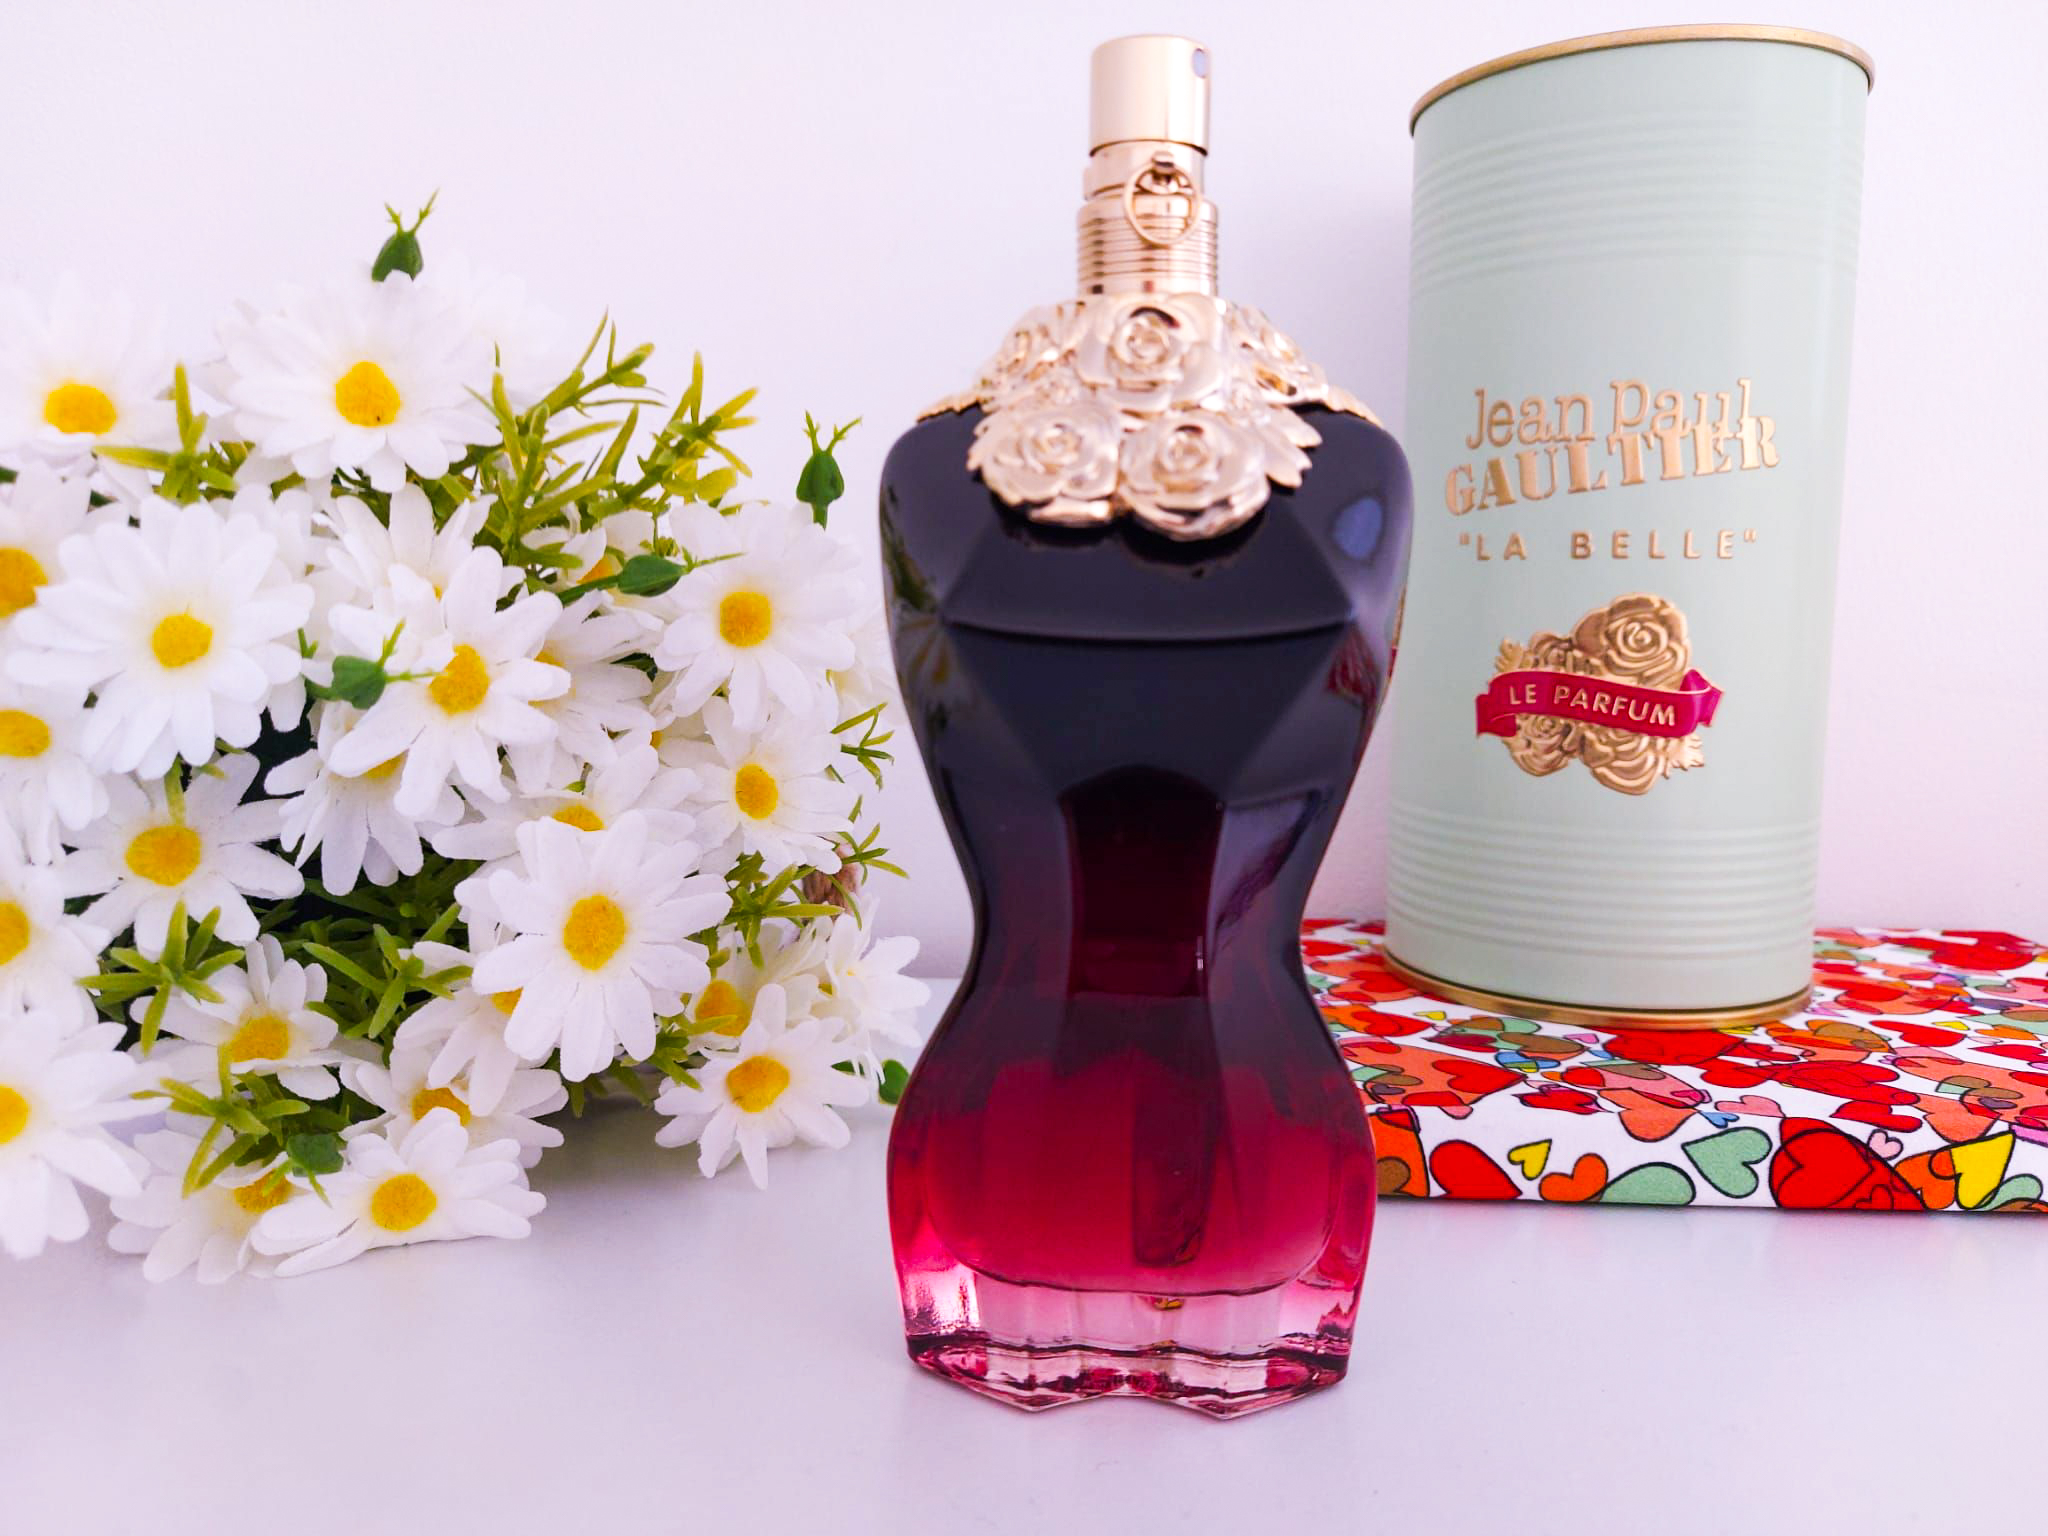 Perfume Review: La Belle Le Parfum by Jean Paul Gaultier – Pink